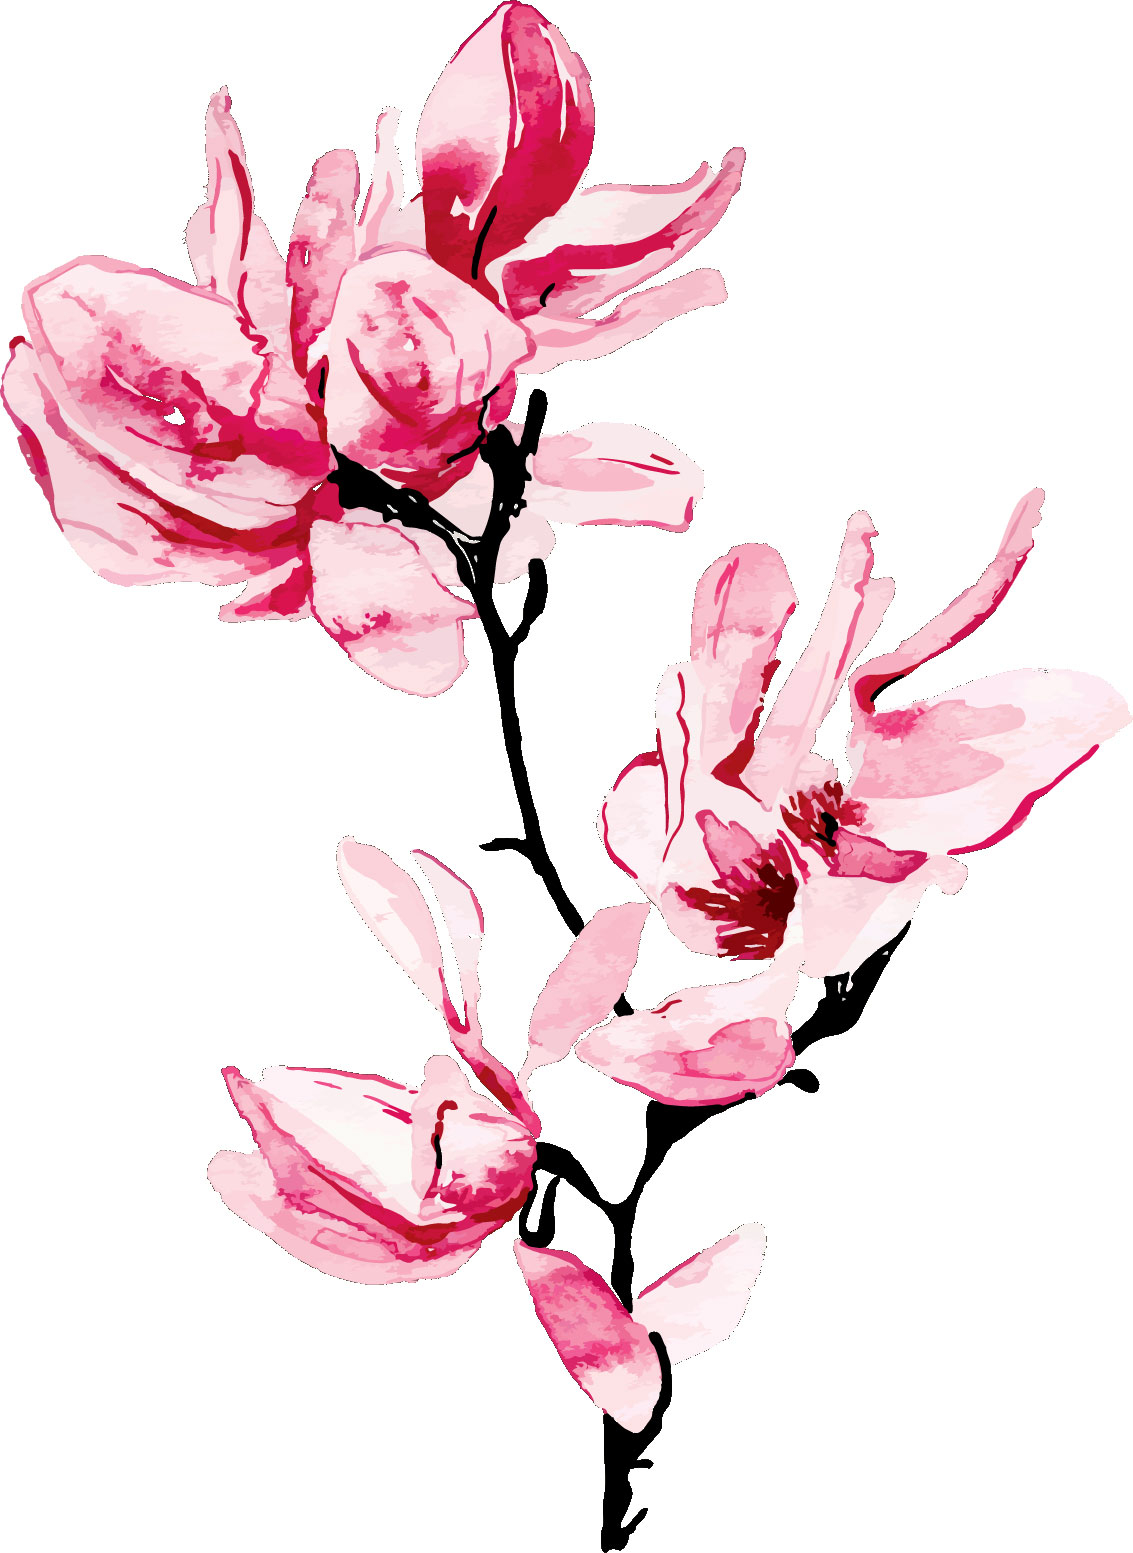 リアルタッチな花のイラスト フリー素材 No 246 ピンク 枝 水彩画風